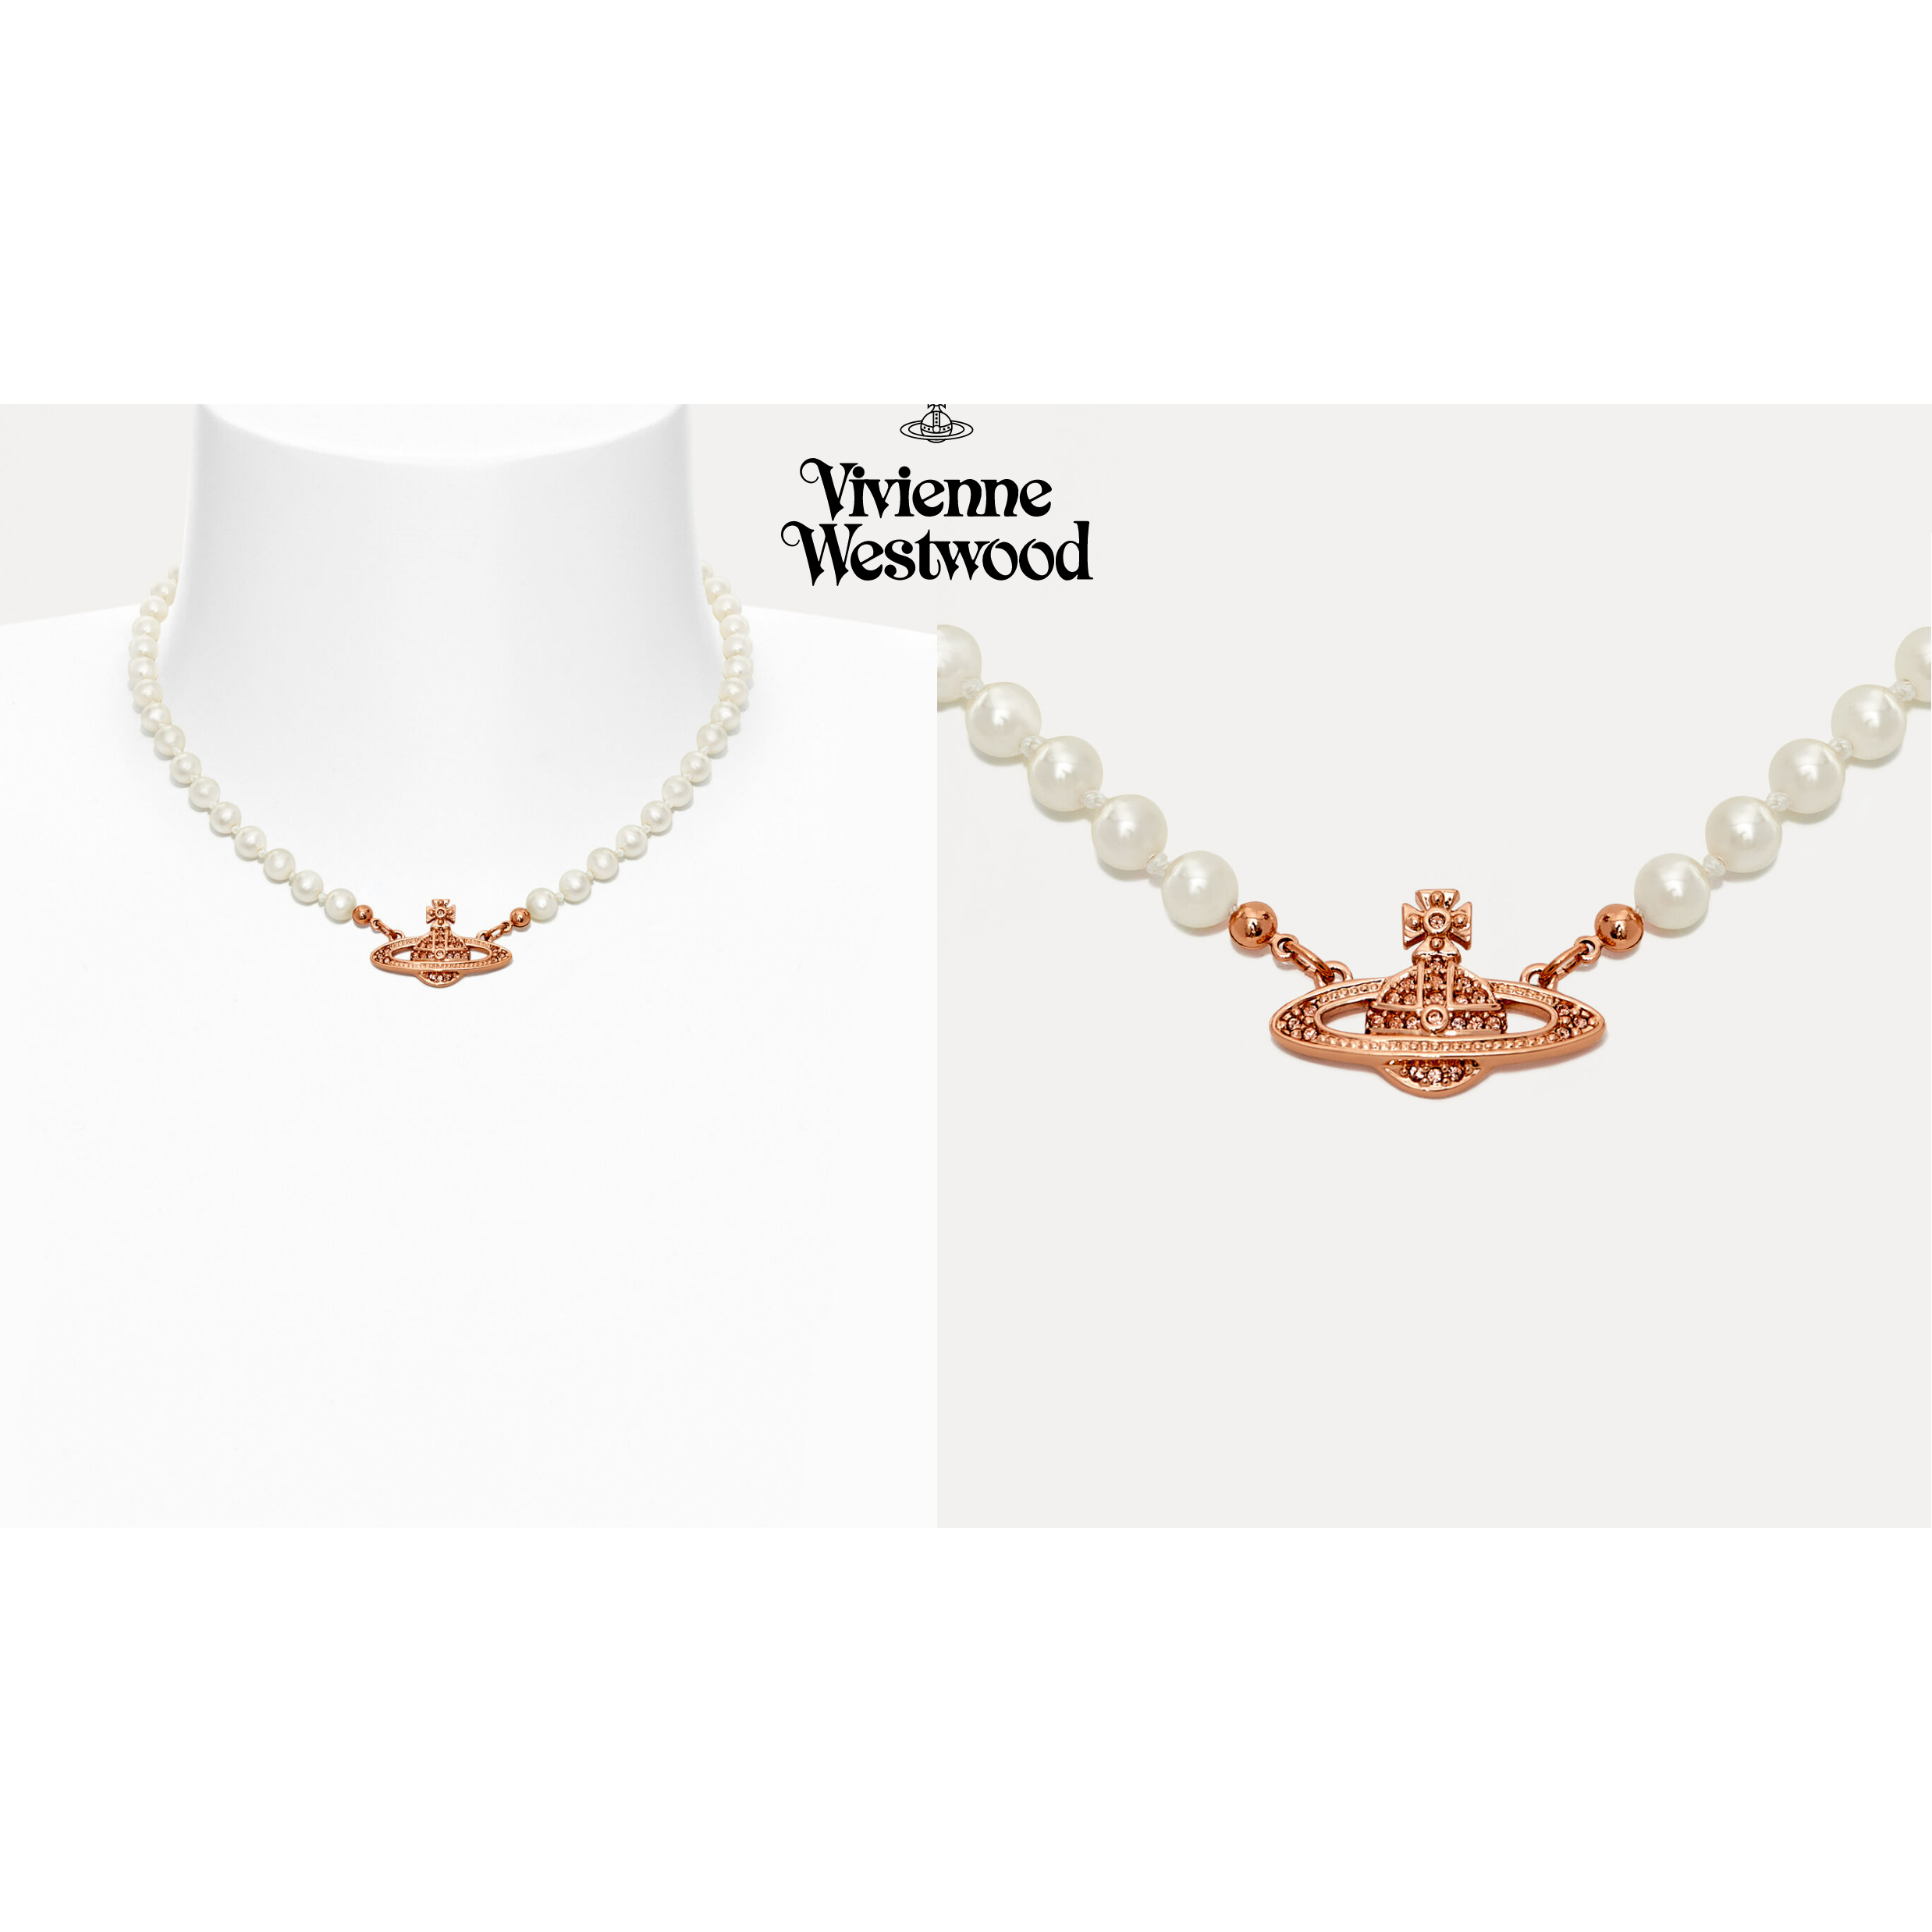 【英國代購】Vivienne Westwood 浮雕珍珠項鍊(限量玫瑰金) (含運